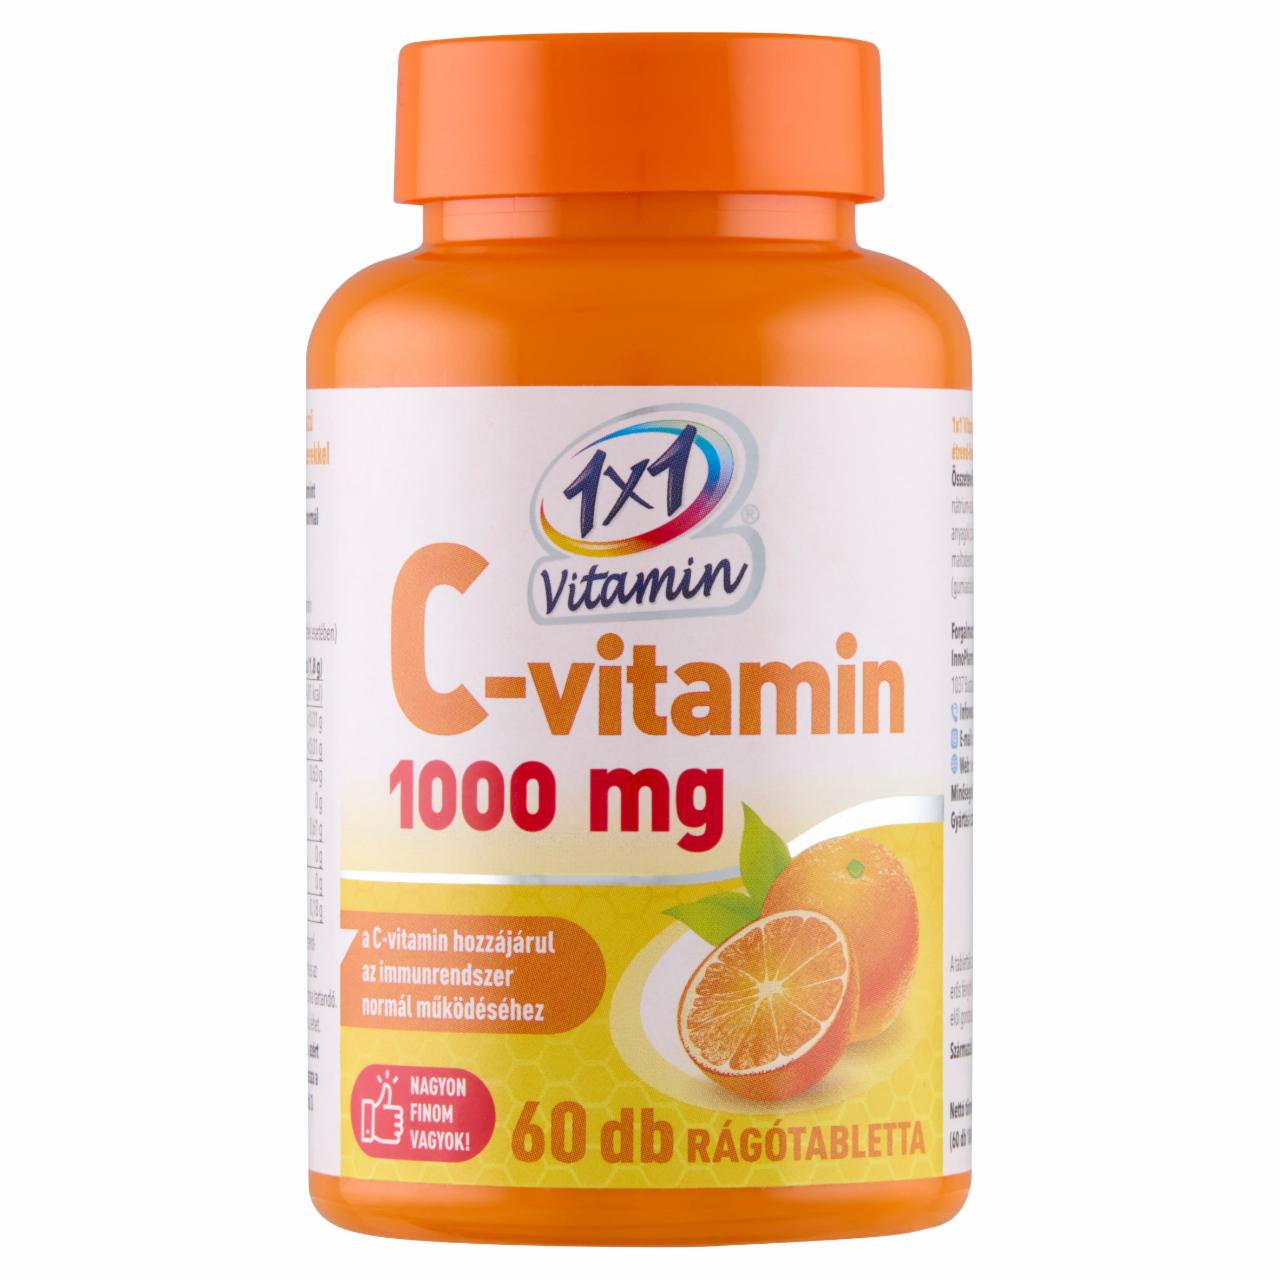 Képek - 1x1 Vitamin C-vitamin 1000 mg narancsízű étrend-kiegészítő rágótabletta 60 x 1800 mg (108 g)